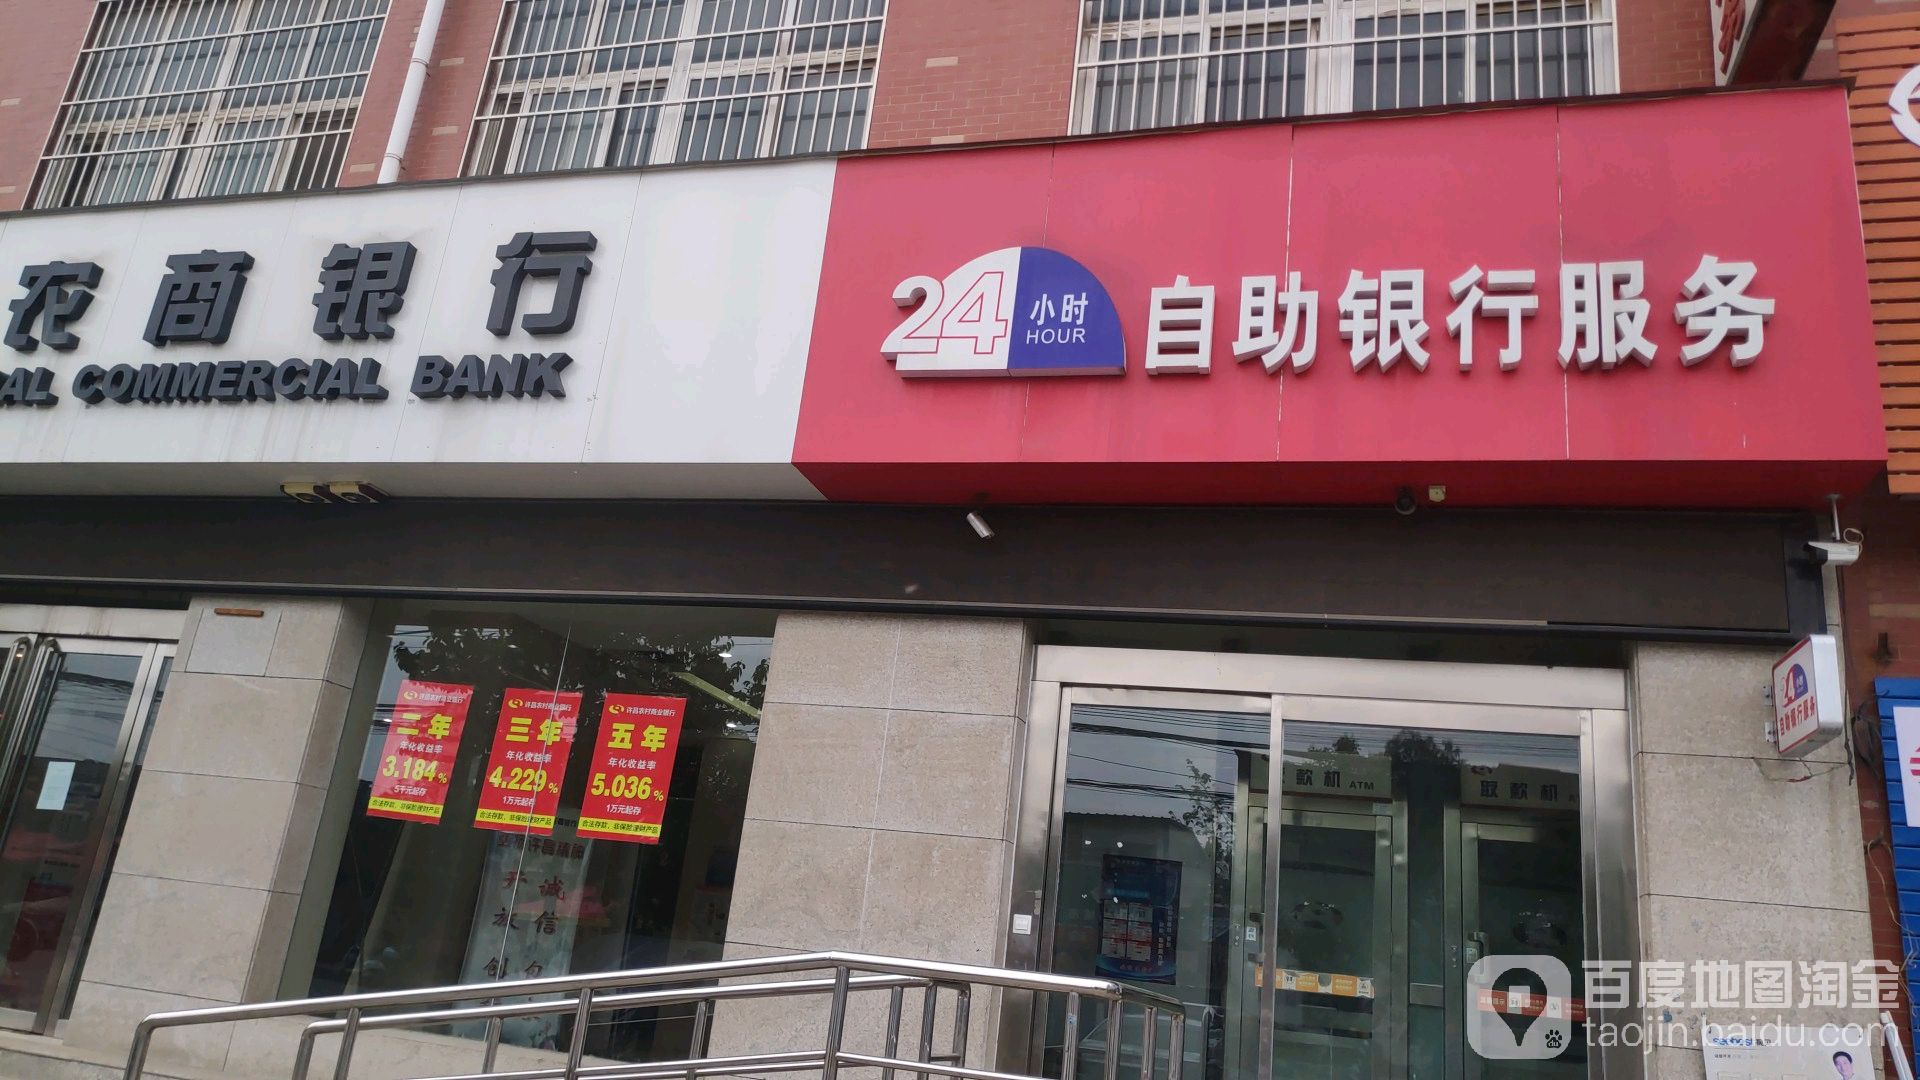 许昌农村商业银行24小时自助银行